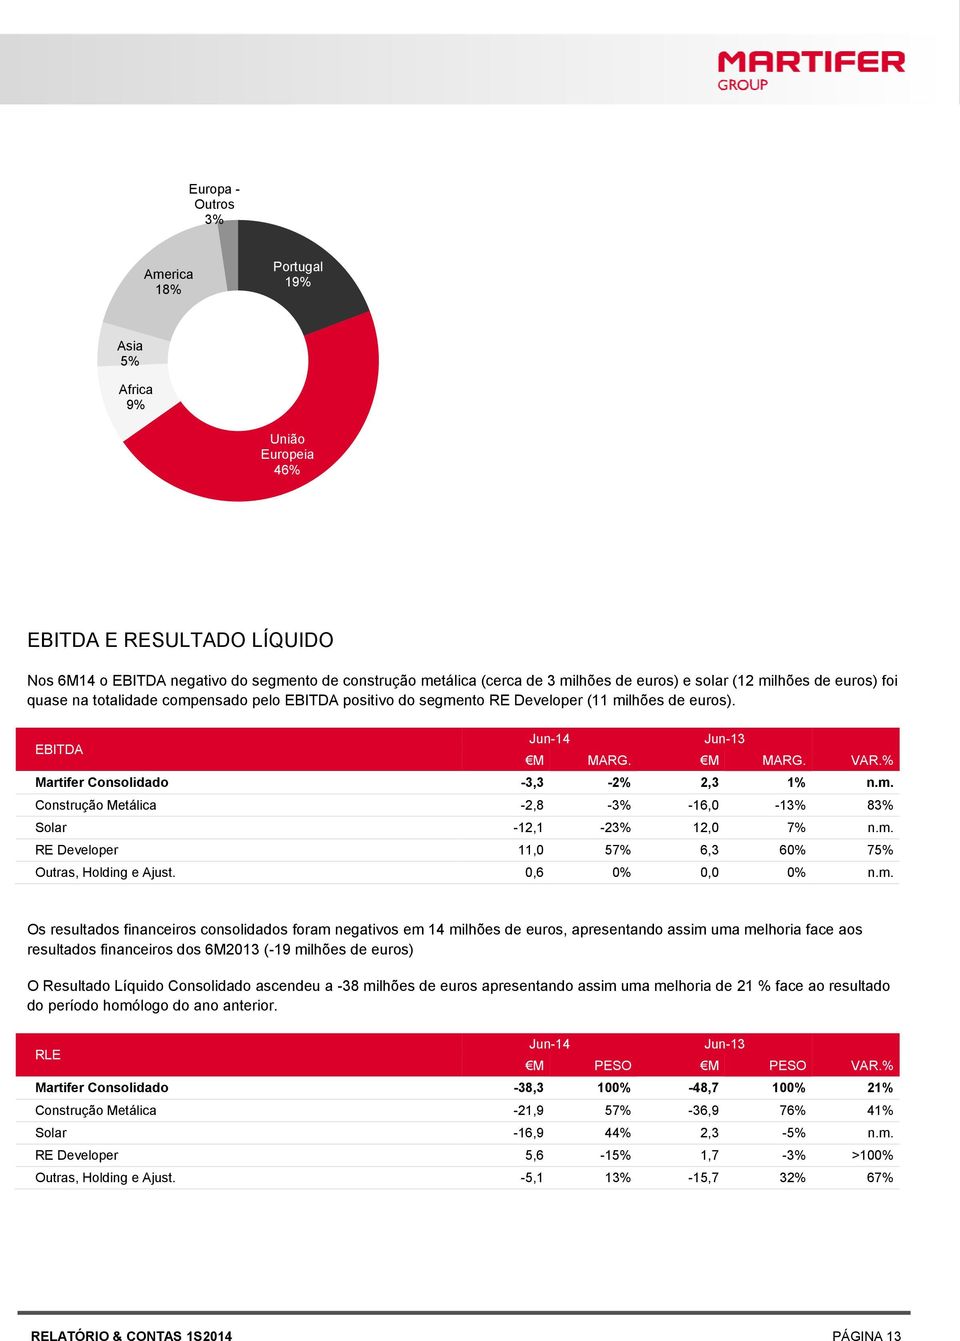 % Martifer Consolidado -3,3-2% 2,3 1% n.m.